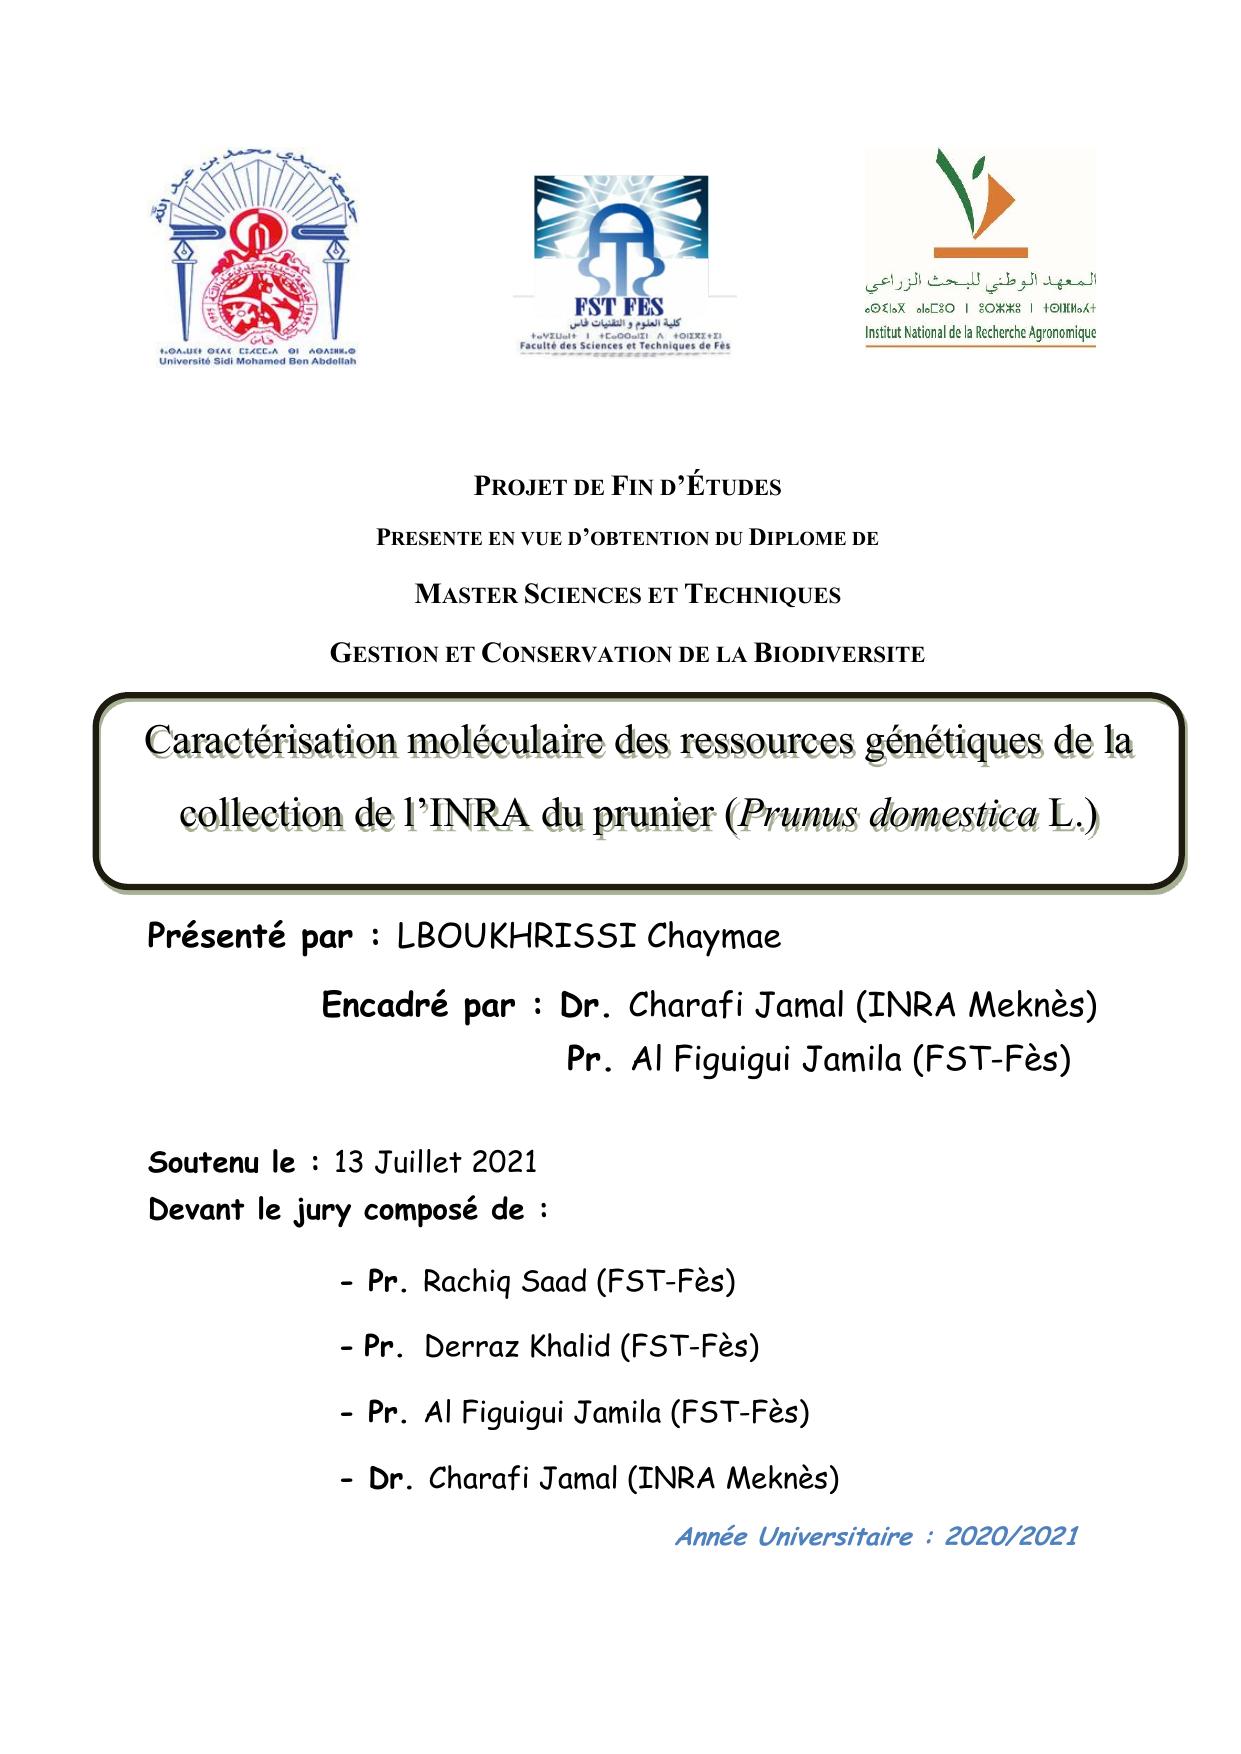 Caractérisation moléculaire des ressources génétiques de la collection de l’INRA du prunier (Prunus domestica L.)